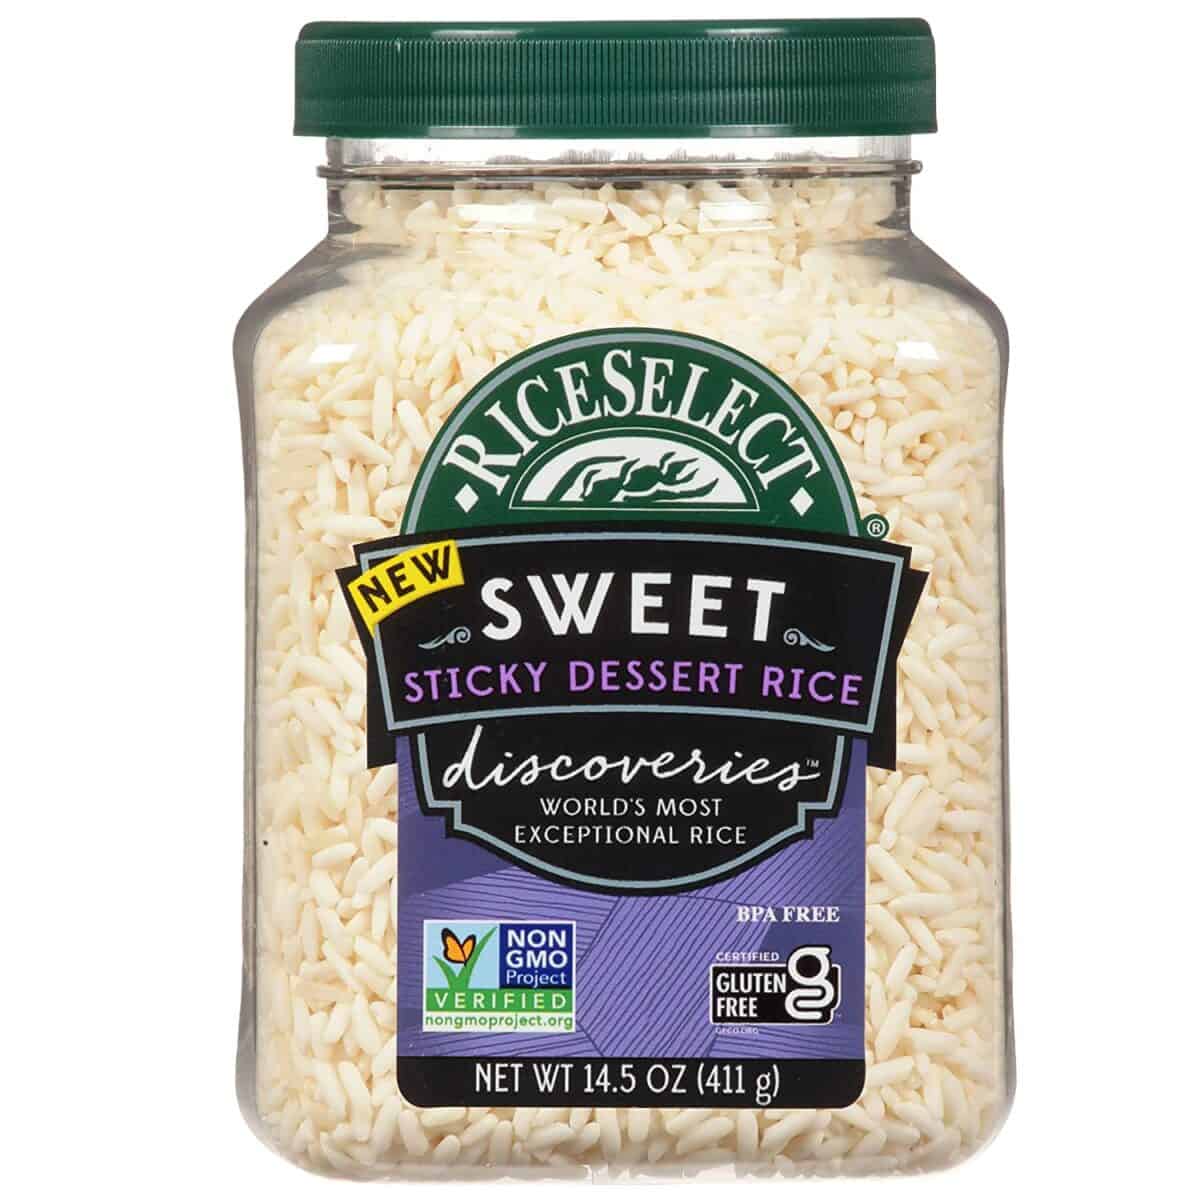 ข้าวเหนียวปลอดจีเอ็มโอที่ดีที่สุด - RiceSelect Sweet Sticky Rice